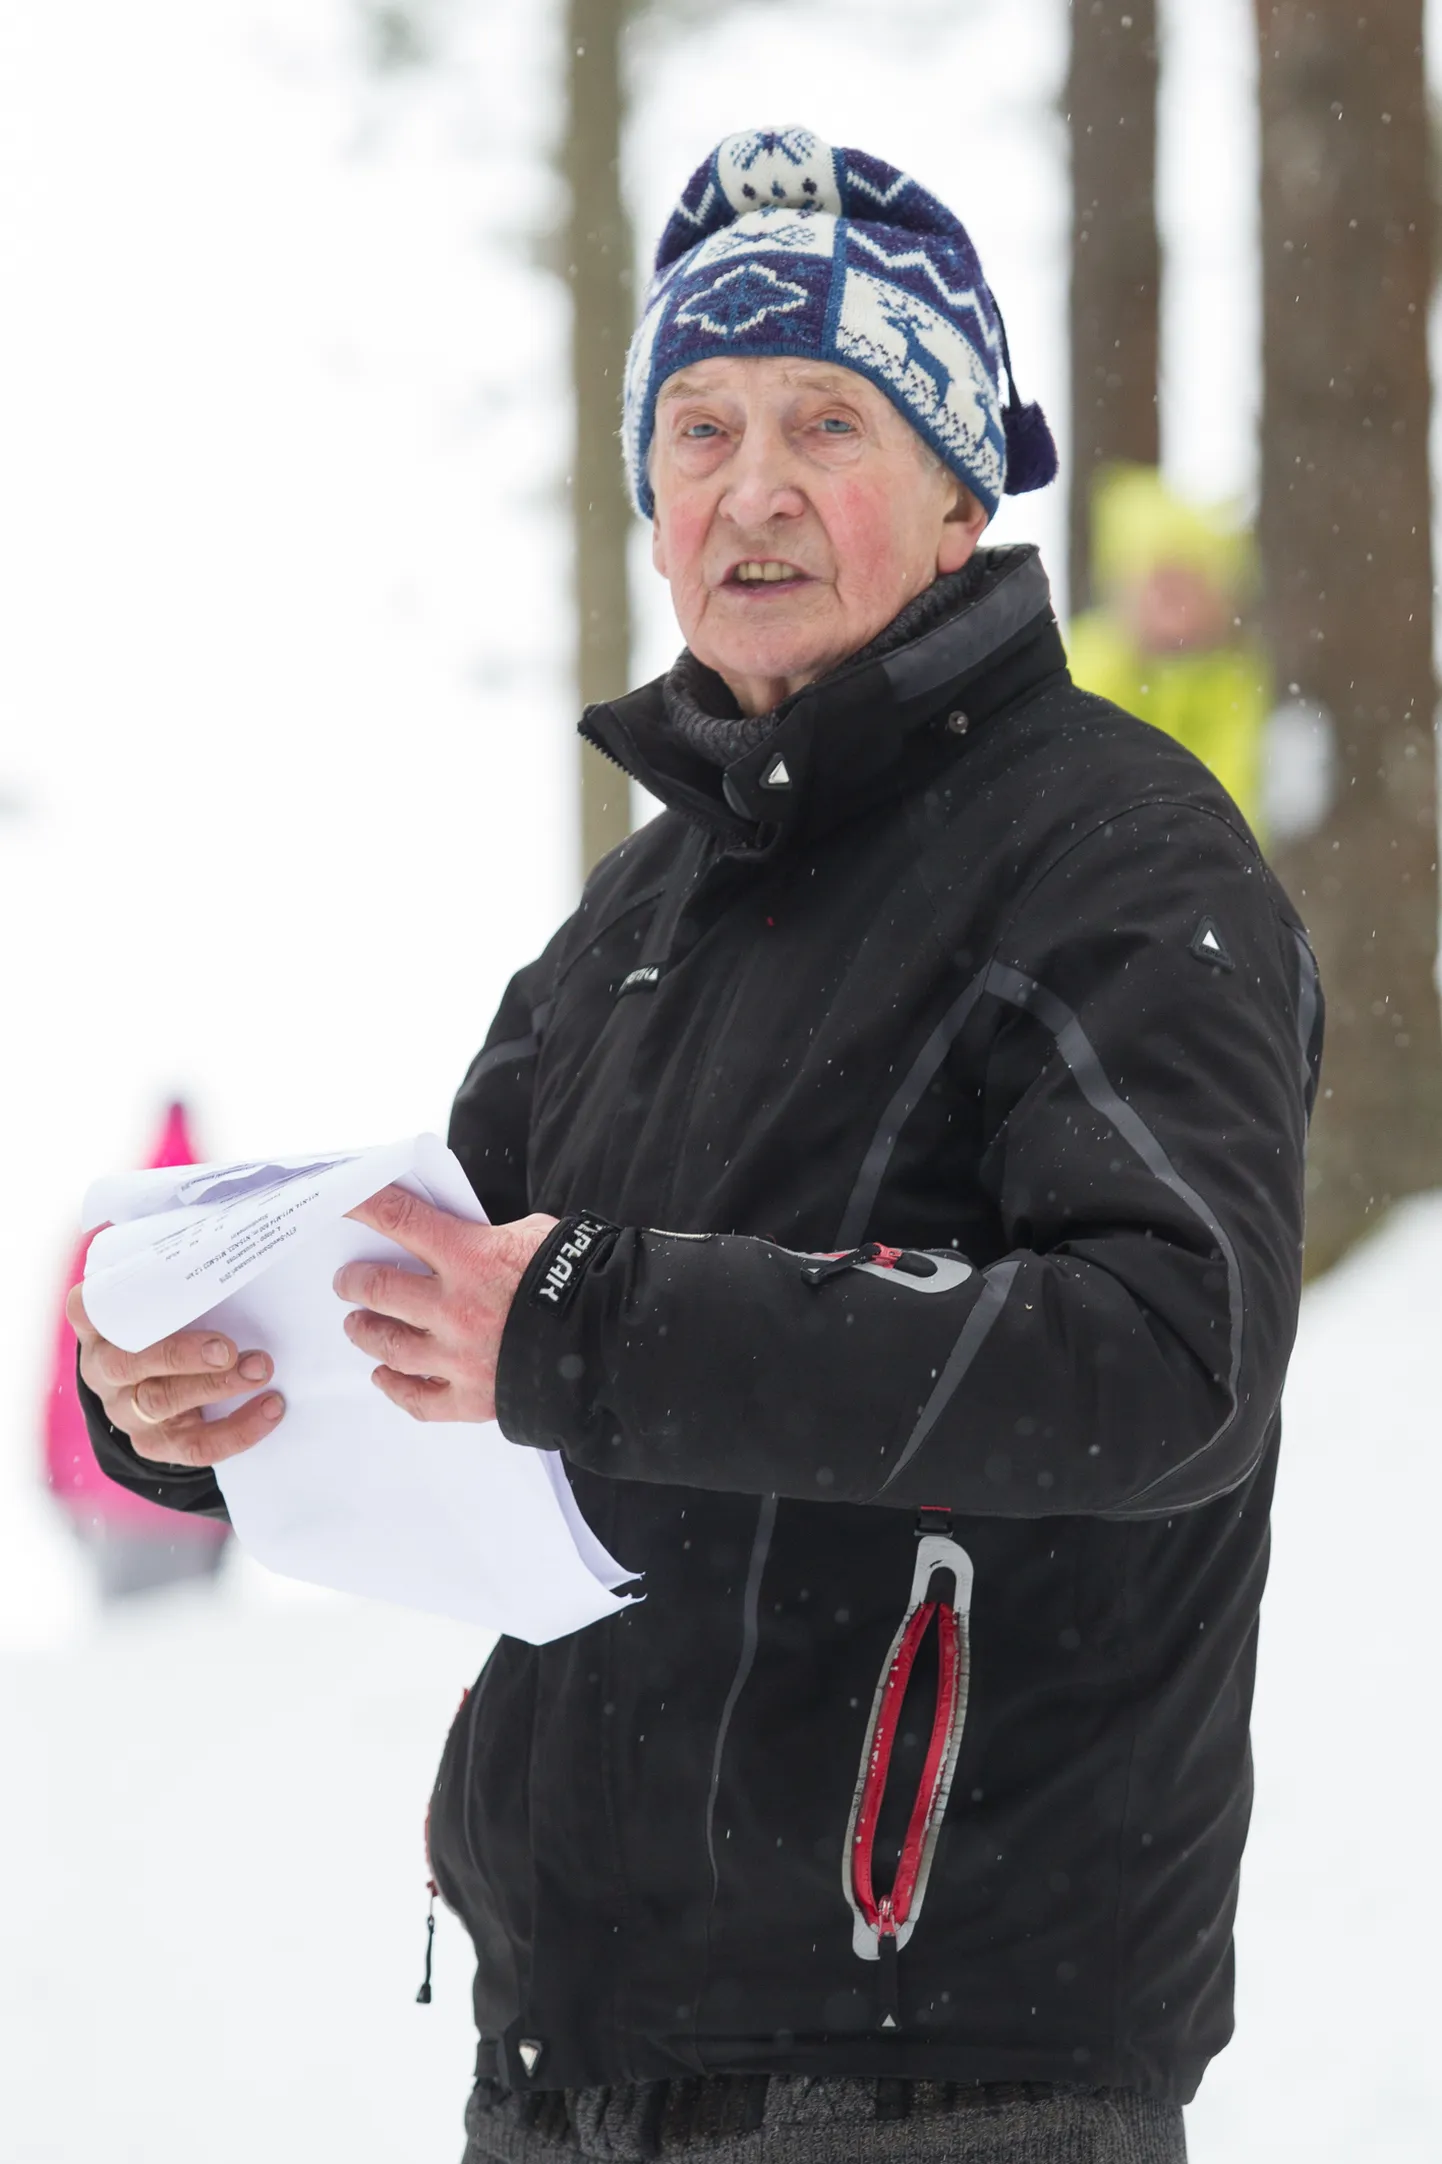 Велло Лилиум летом отметит 85-летие, но до сих пор время от времени надевает лыжи. Недавно он сопереживал своей ученице Авели Уусталу, которая дебютировала на Олимпийских играх.